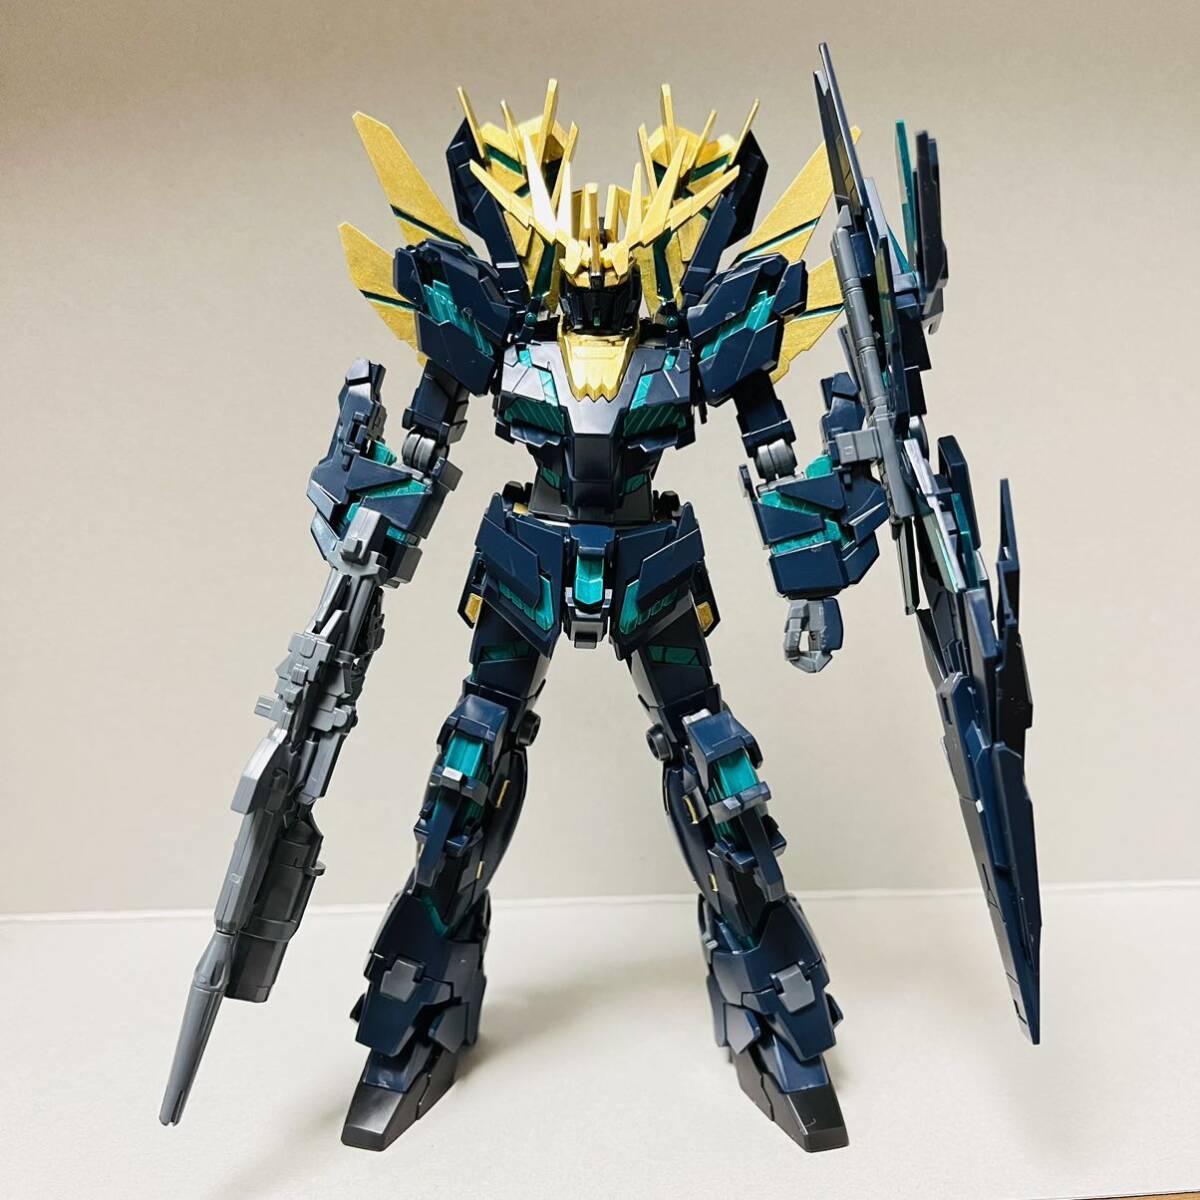 1 иен конечный продукт Bandai gun pra часть покраска 1/144 HG Unicorn Gundam 2 серийный номер van si.*norunte -тактный roi режим Mobile Suit Gundam UC